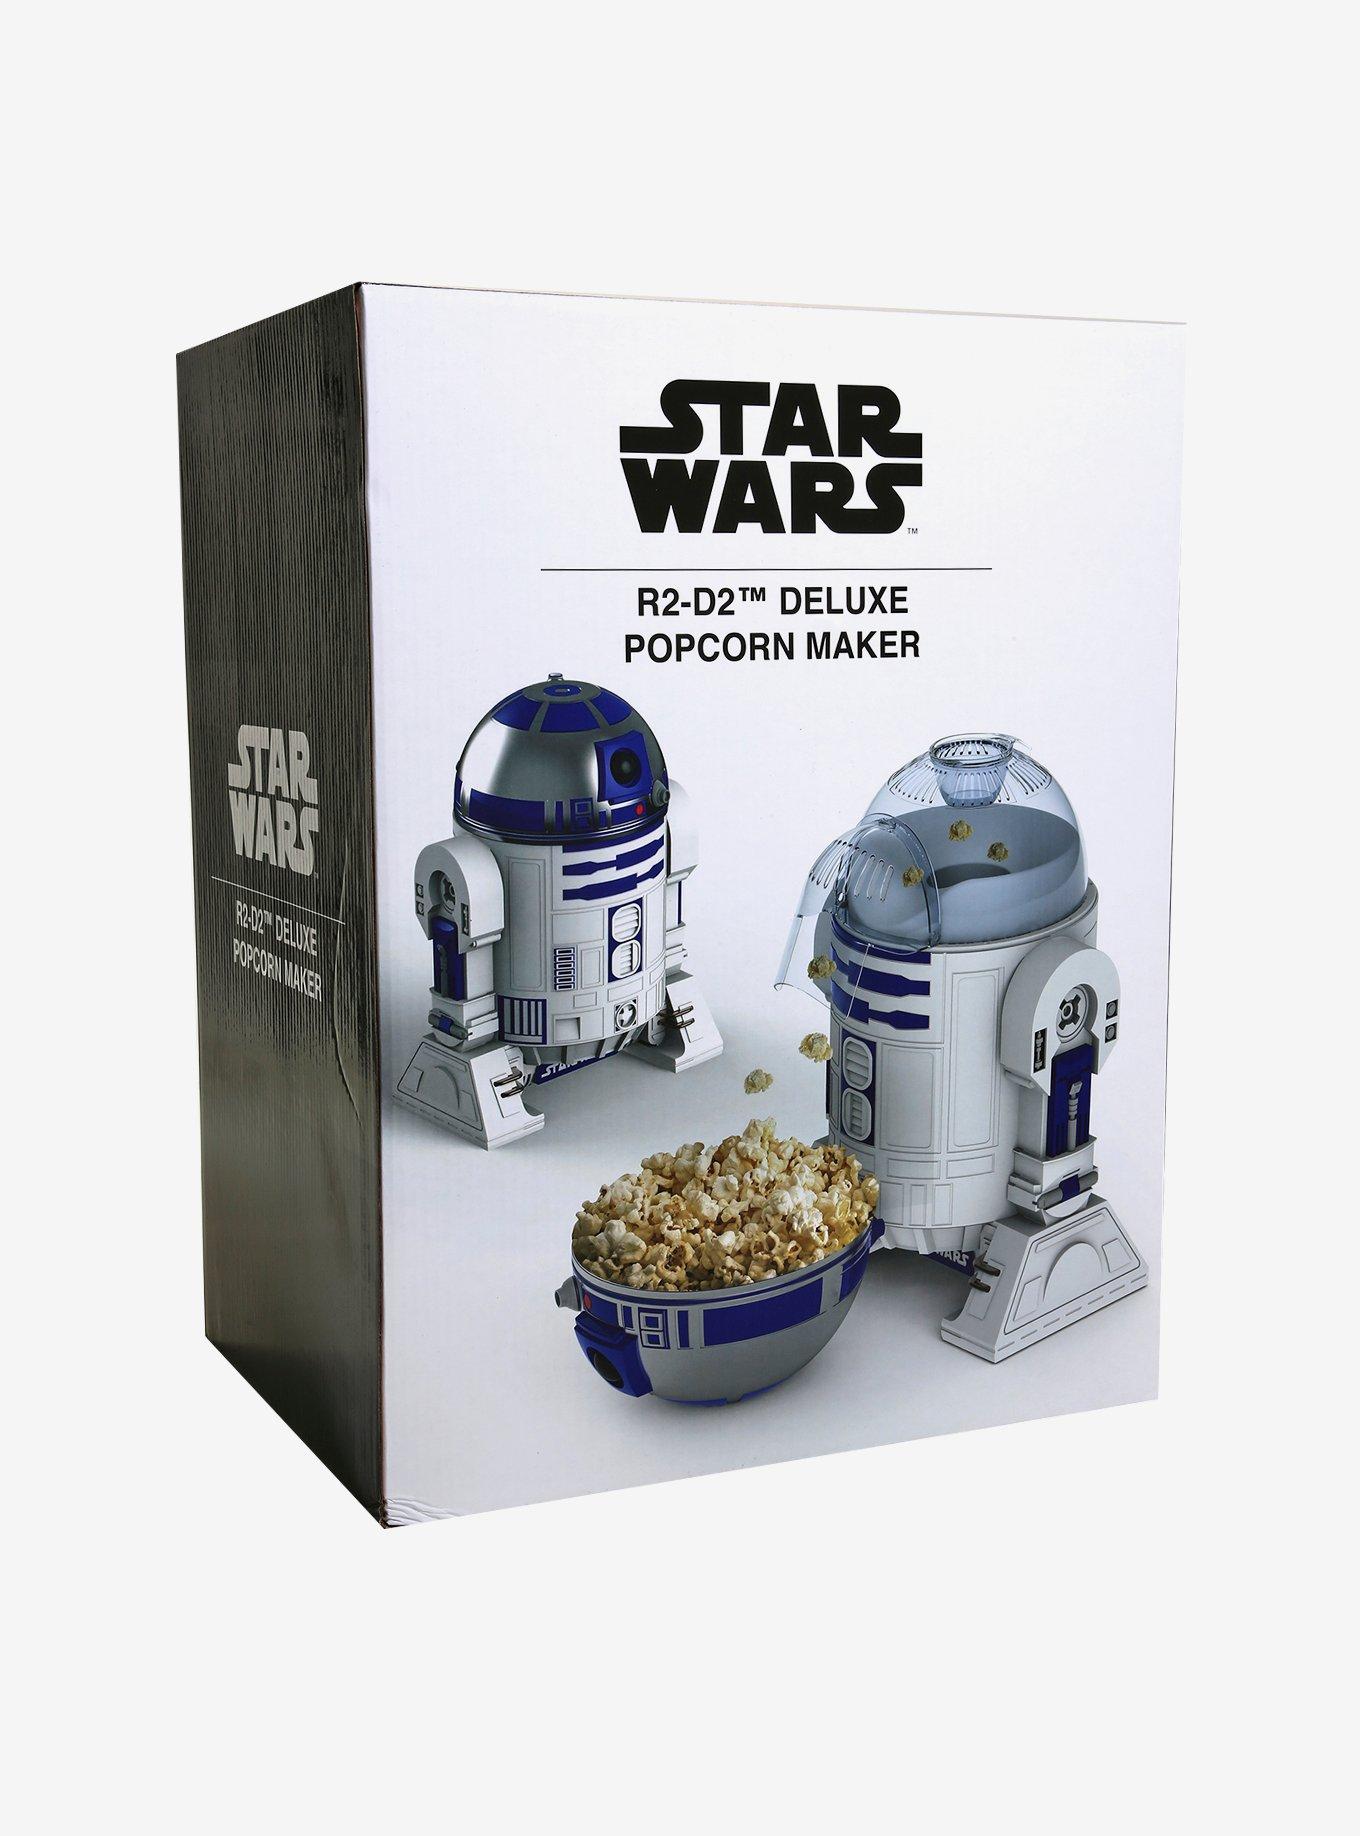 Star Wars R2D2 Popcorn Maker #starwarsfan #r2d2 #r2d2popcornmaker  #disneystarwars 